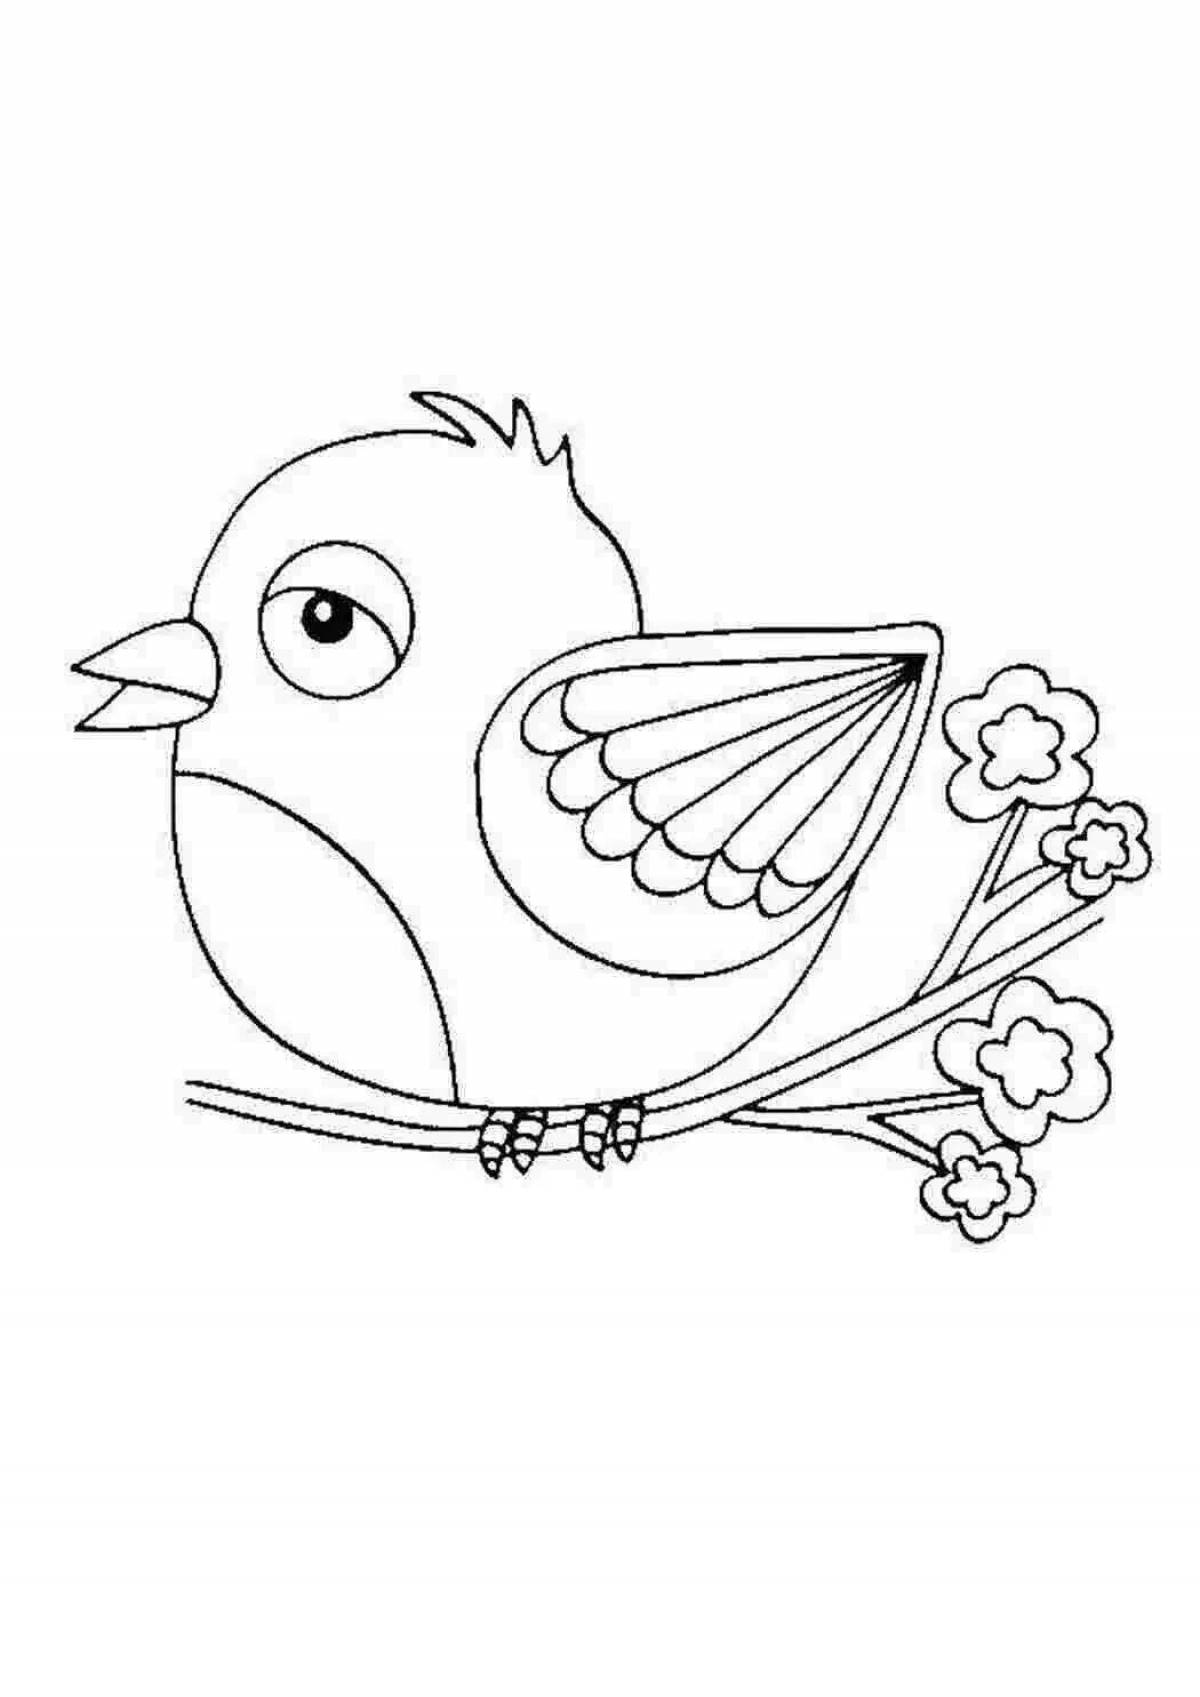 Радостный рисунок птицы для детей